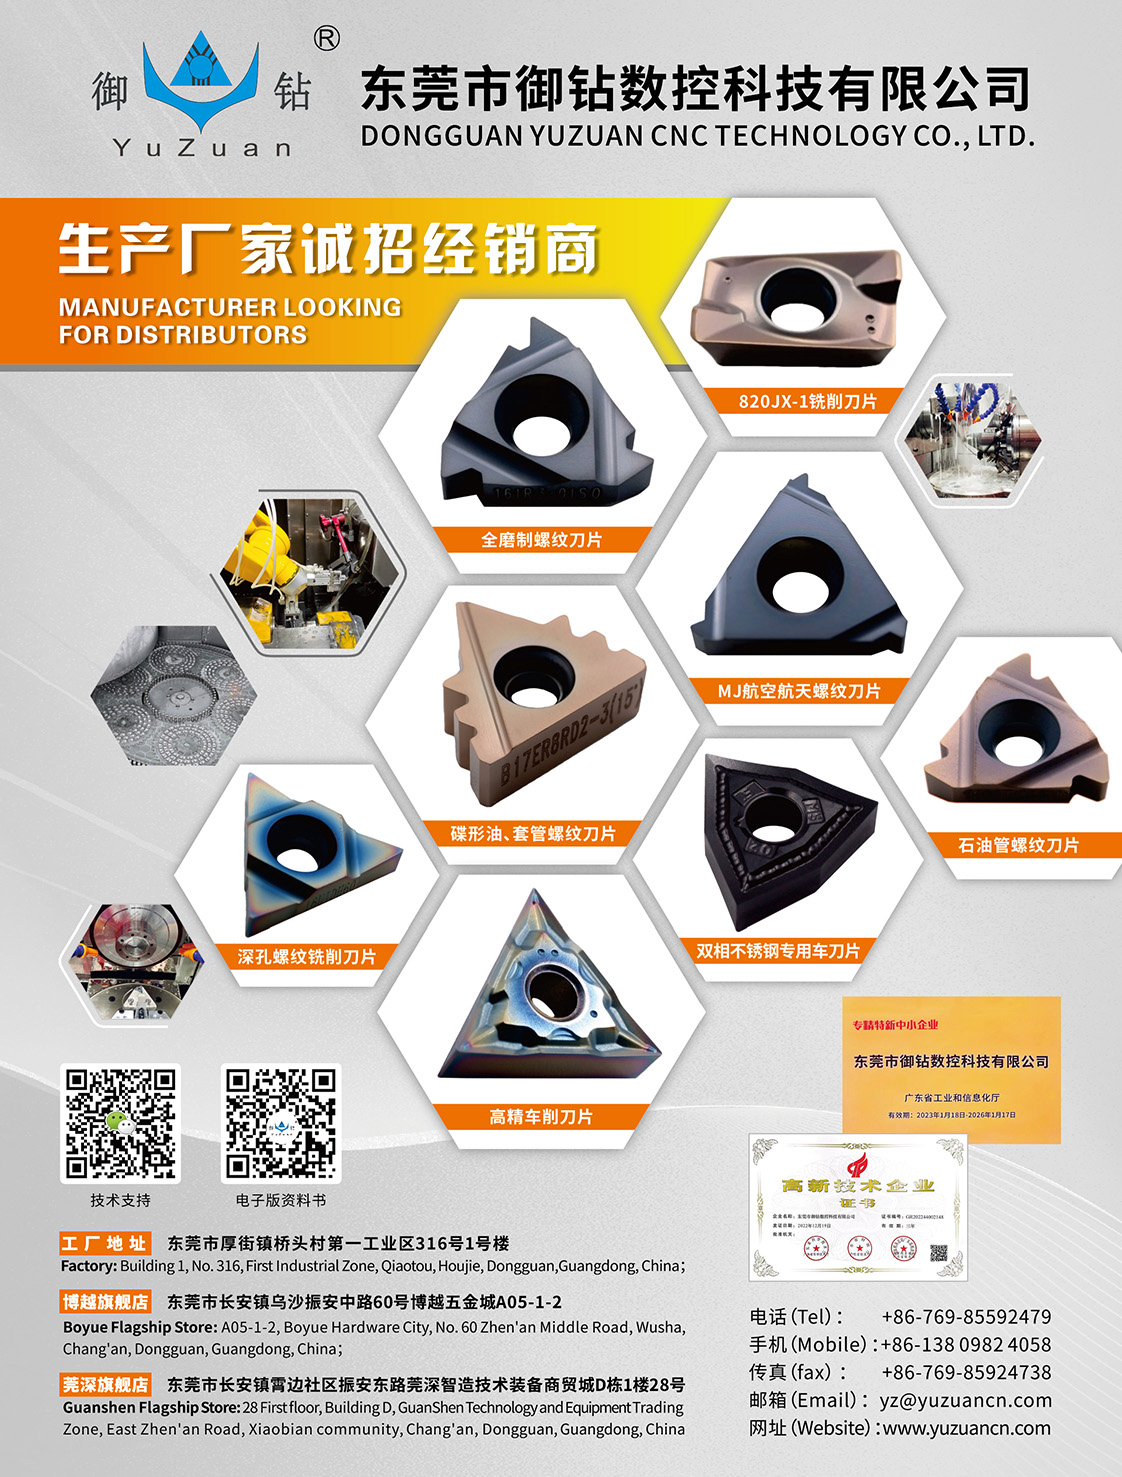 DONGGUAN YUZUAN CNC TECHNOLOGY CO., LTD.